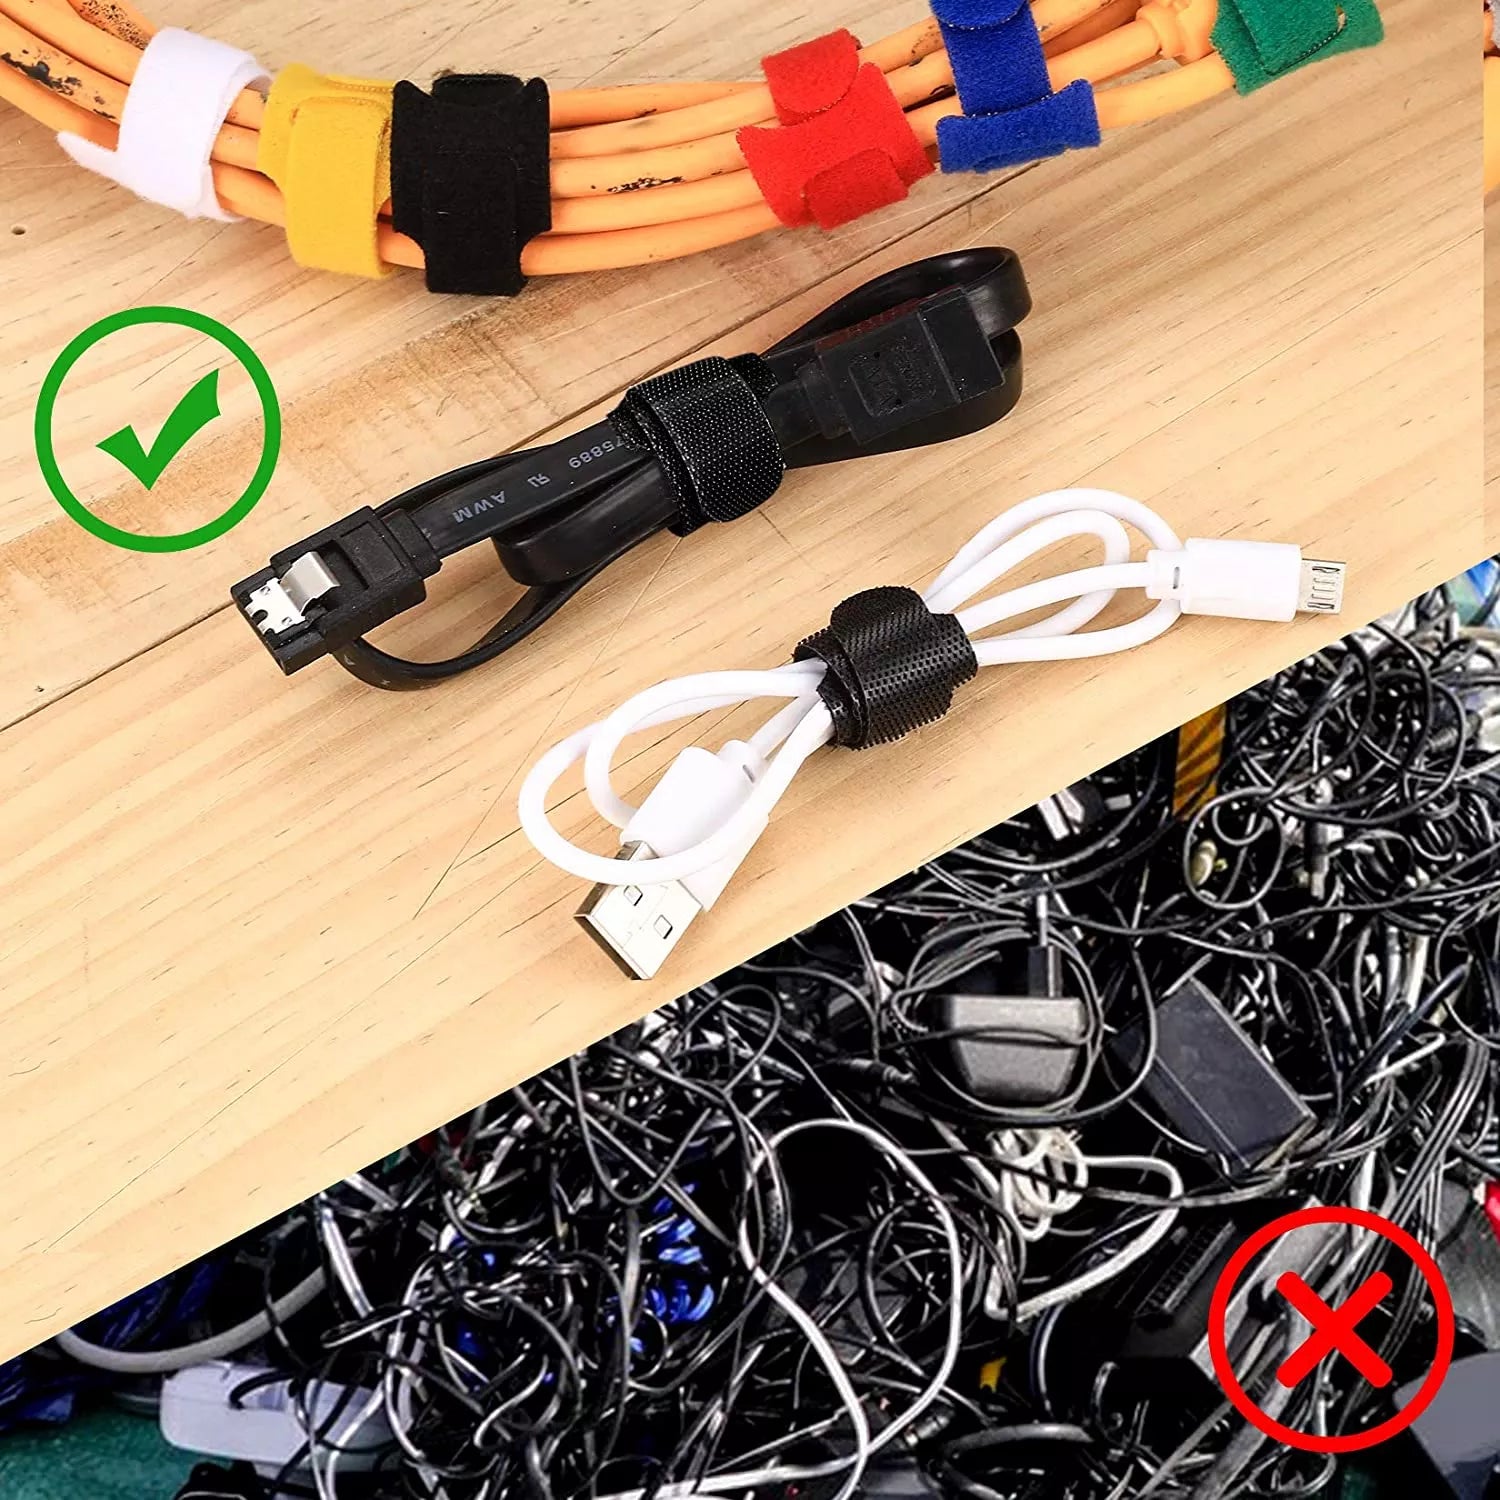 Organizador De Cables En Velcro – Do it Center